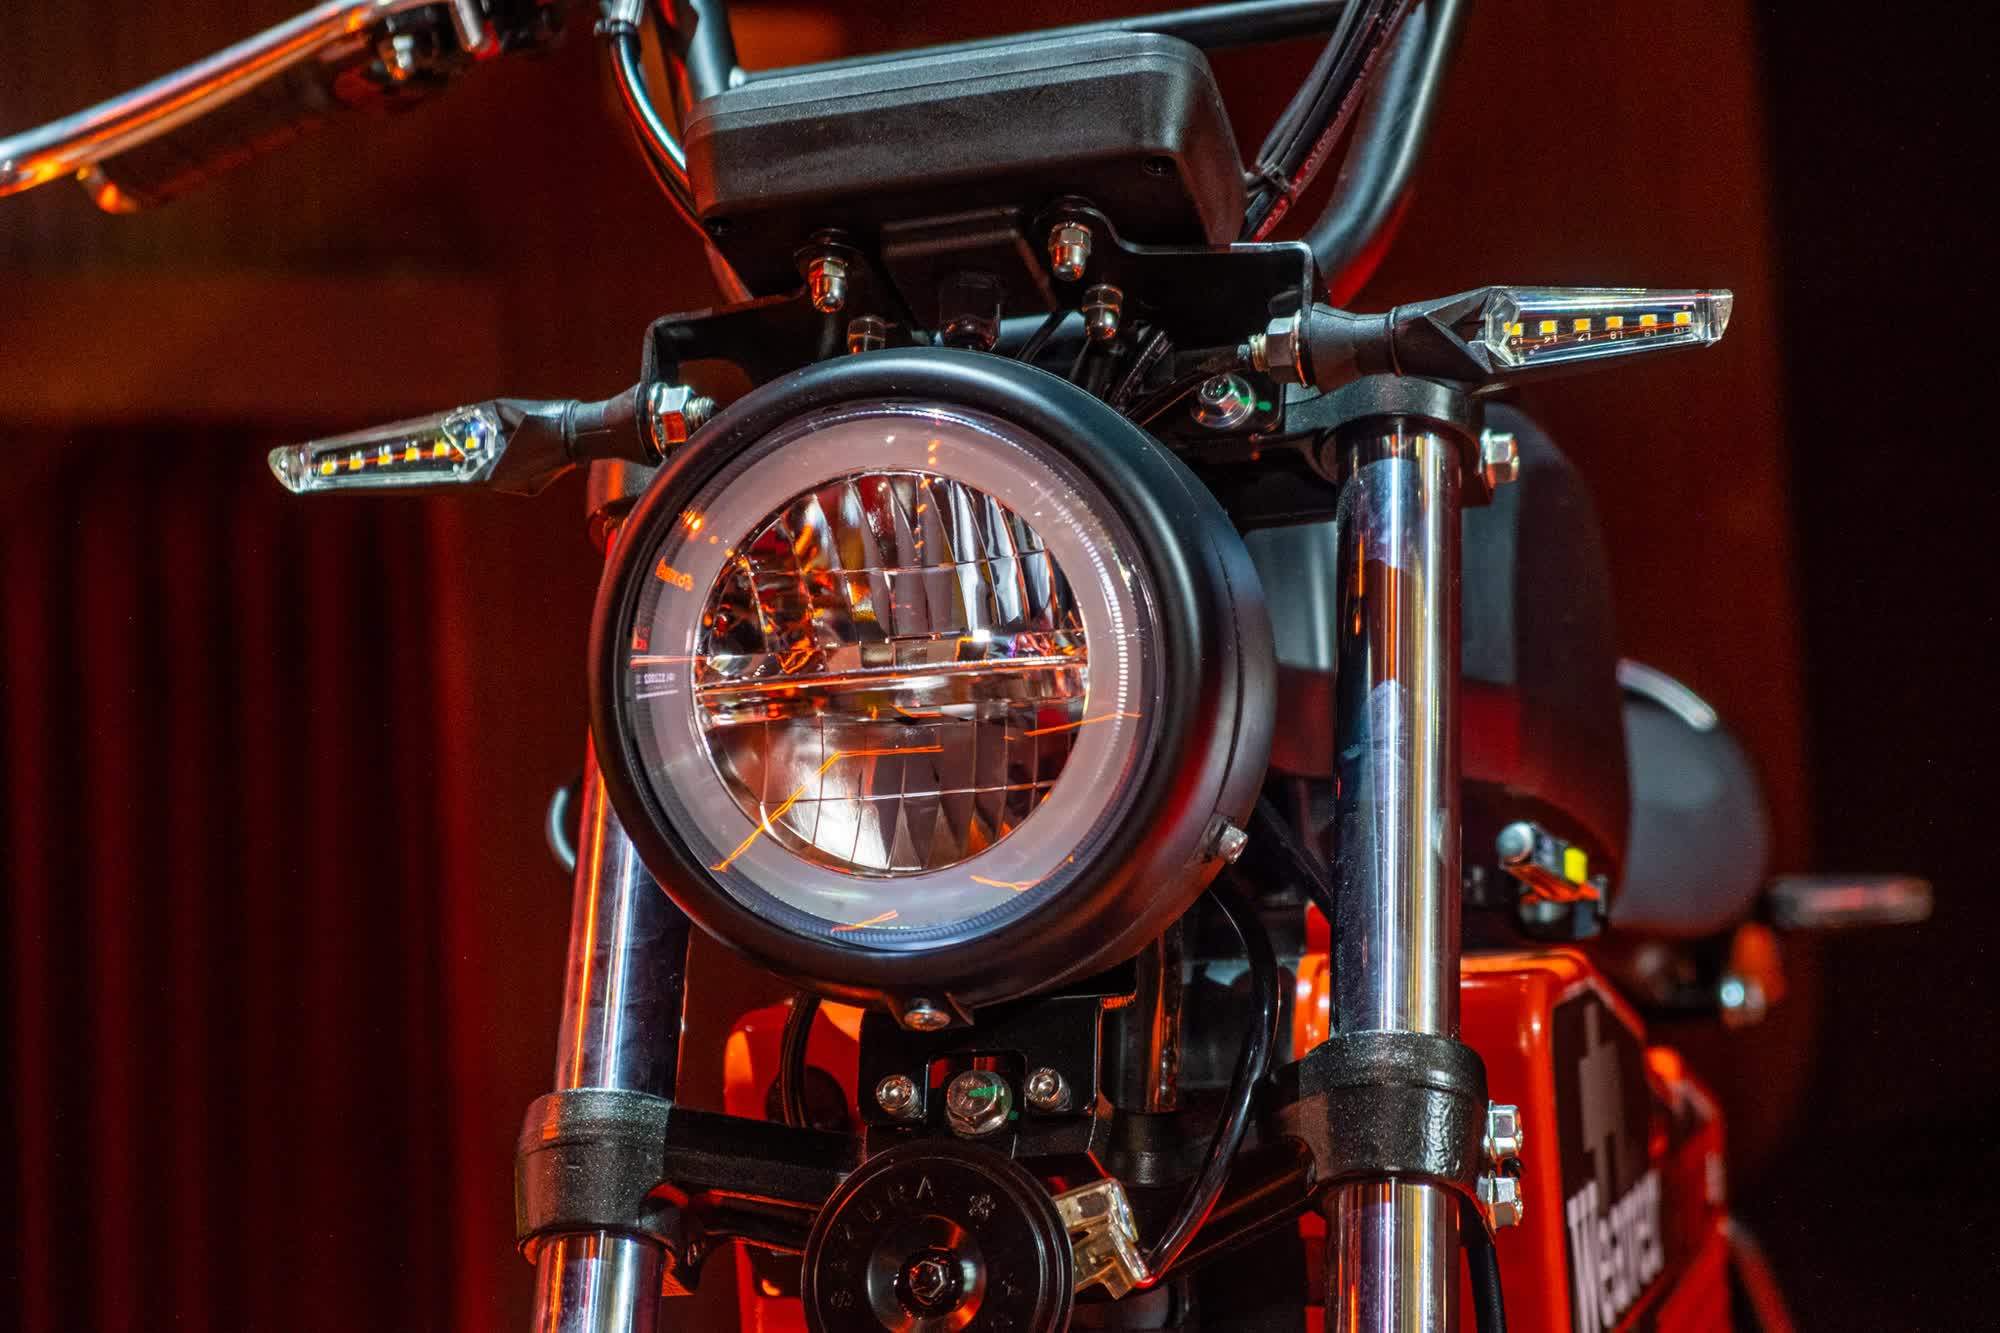 Ra mắt Dat Bike Weaver++: Giá 65,9 triệu đồng, dáng cổ điển, sạc nhanh chưa từng có tại Việt Nam - ảnh 11